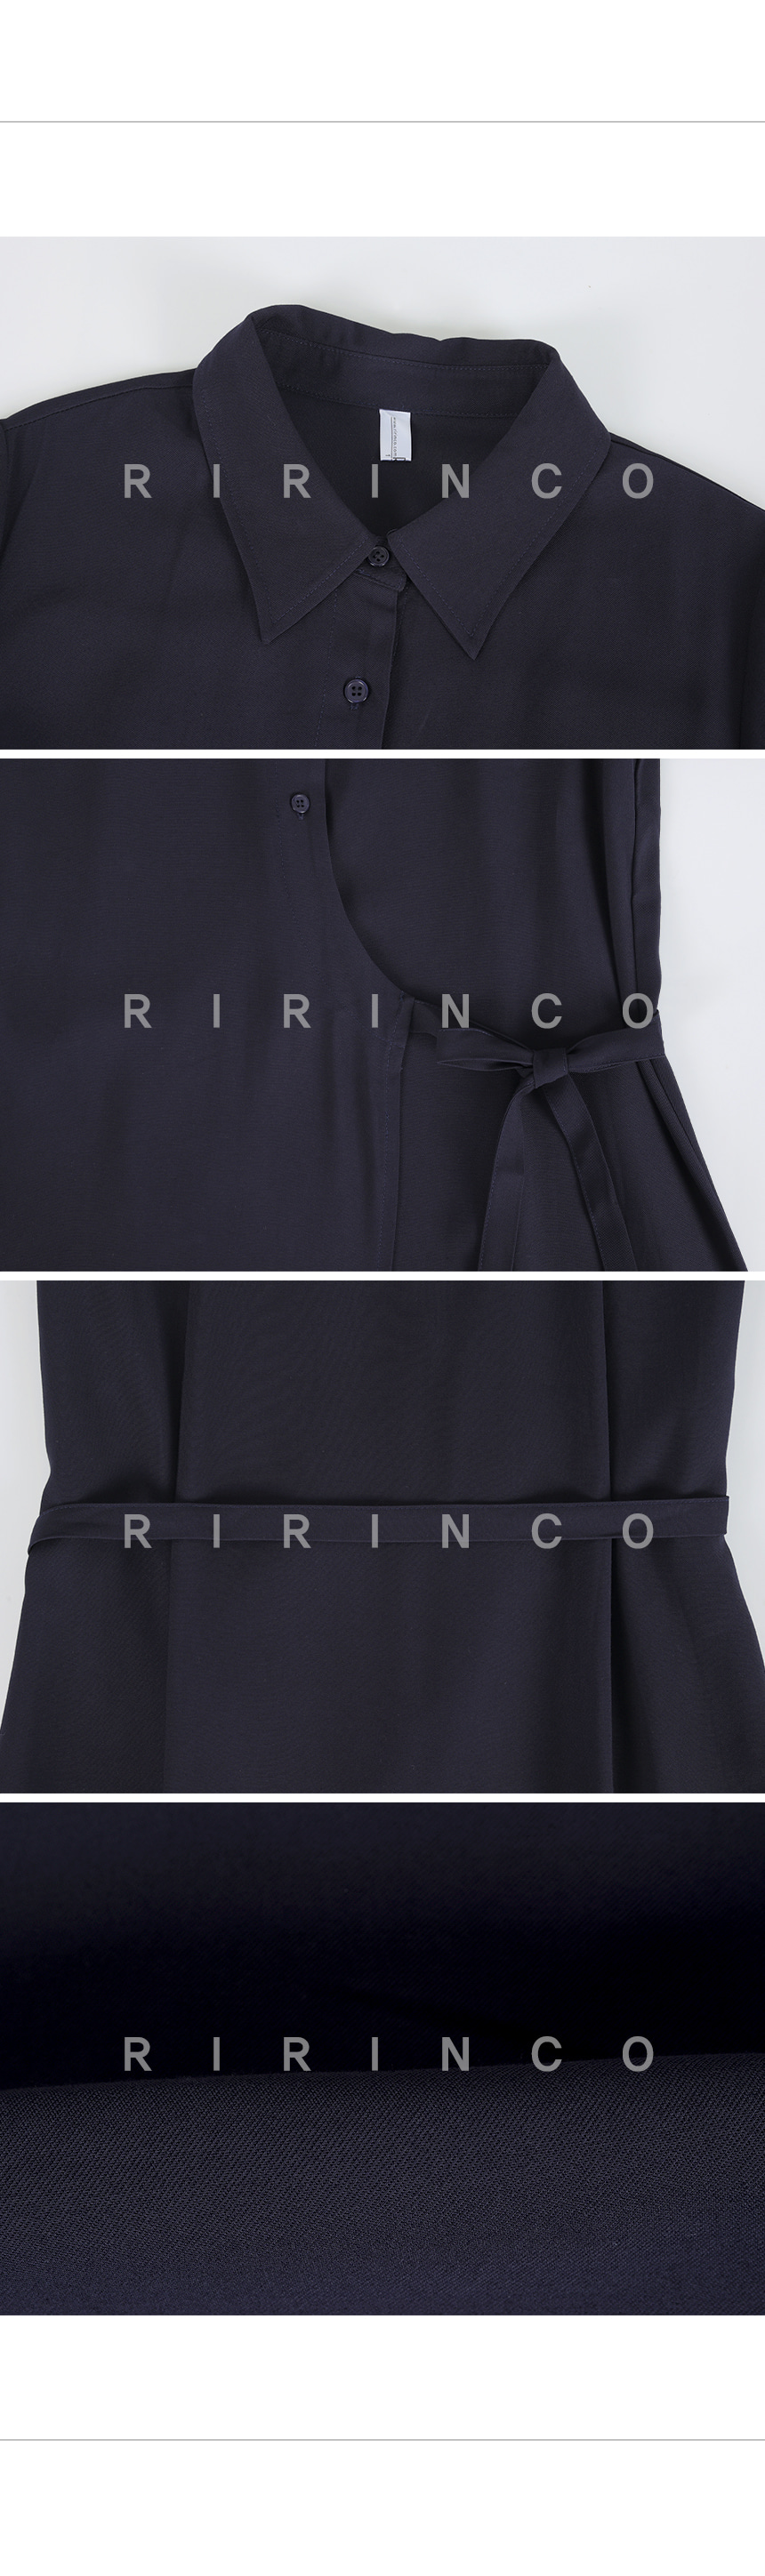 RIRINCO レイヤードラップシャツロングワンピース